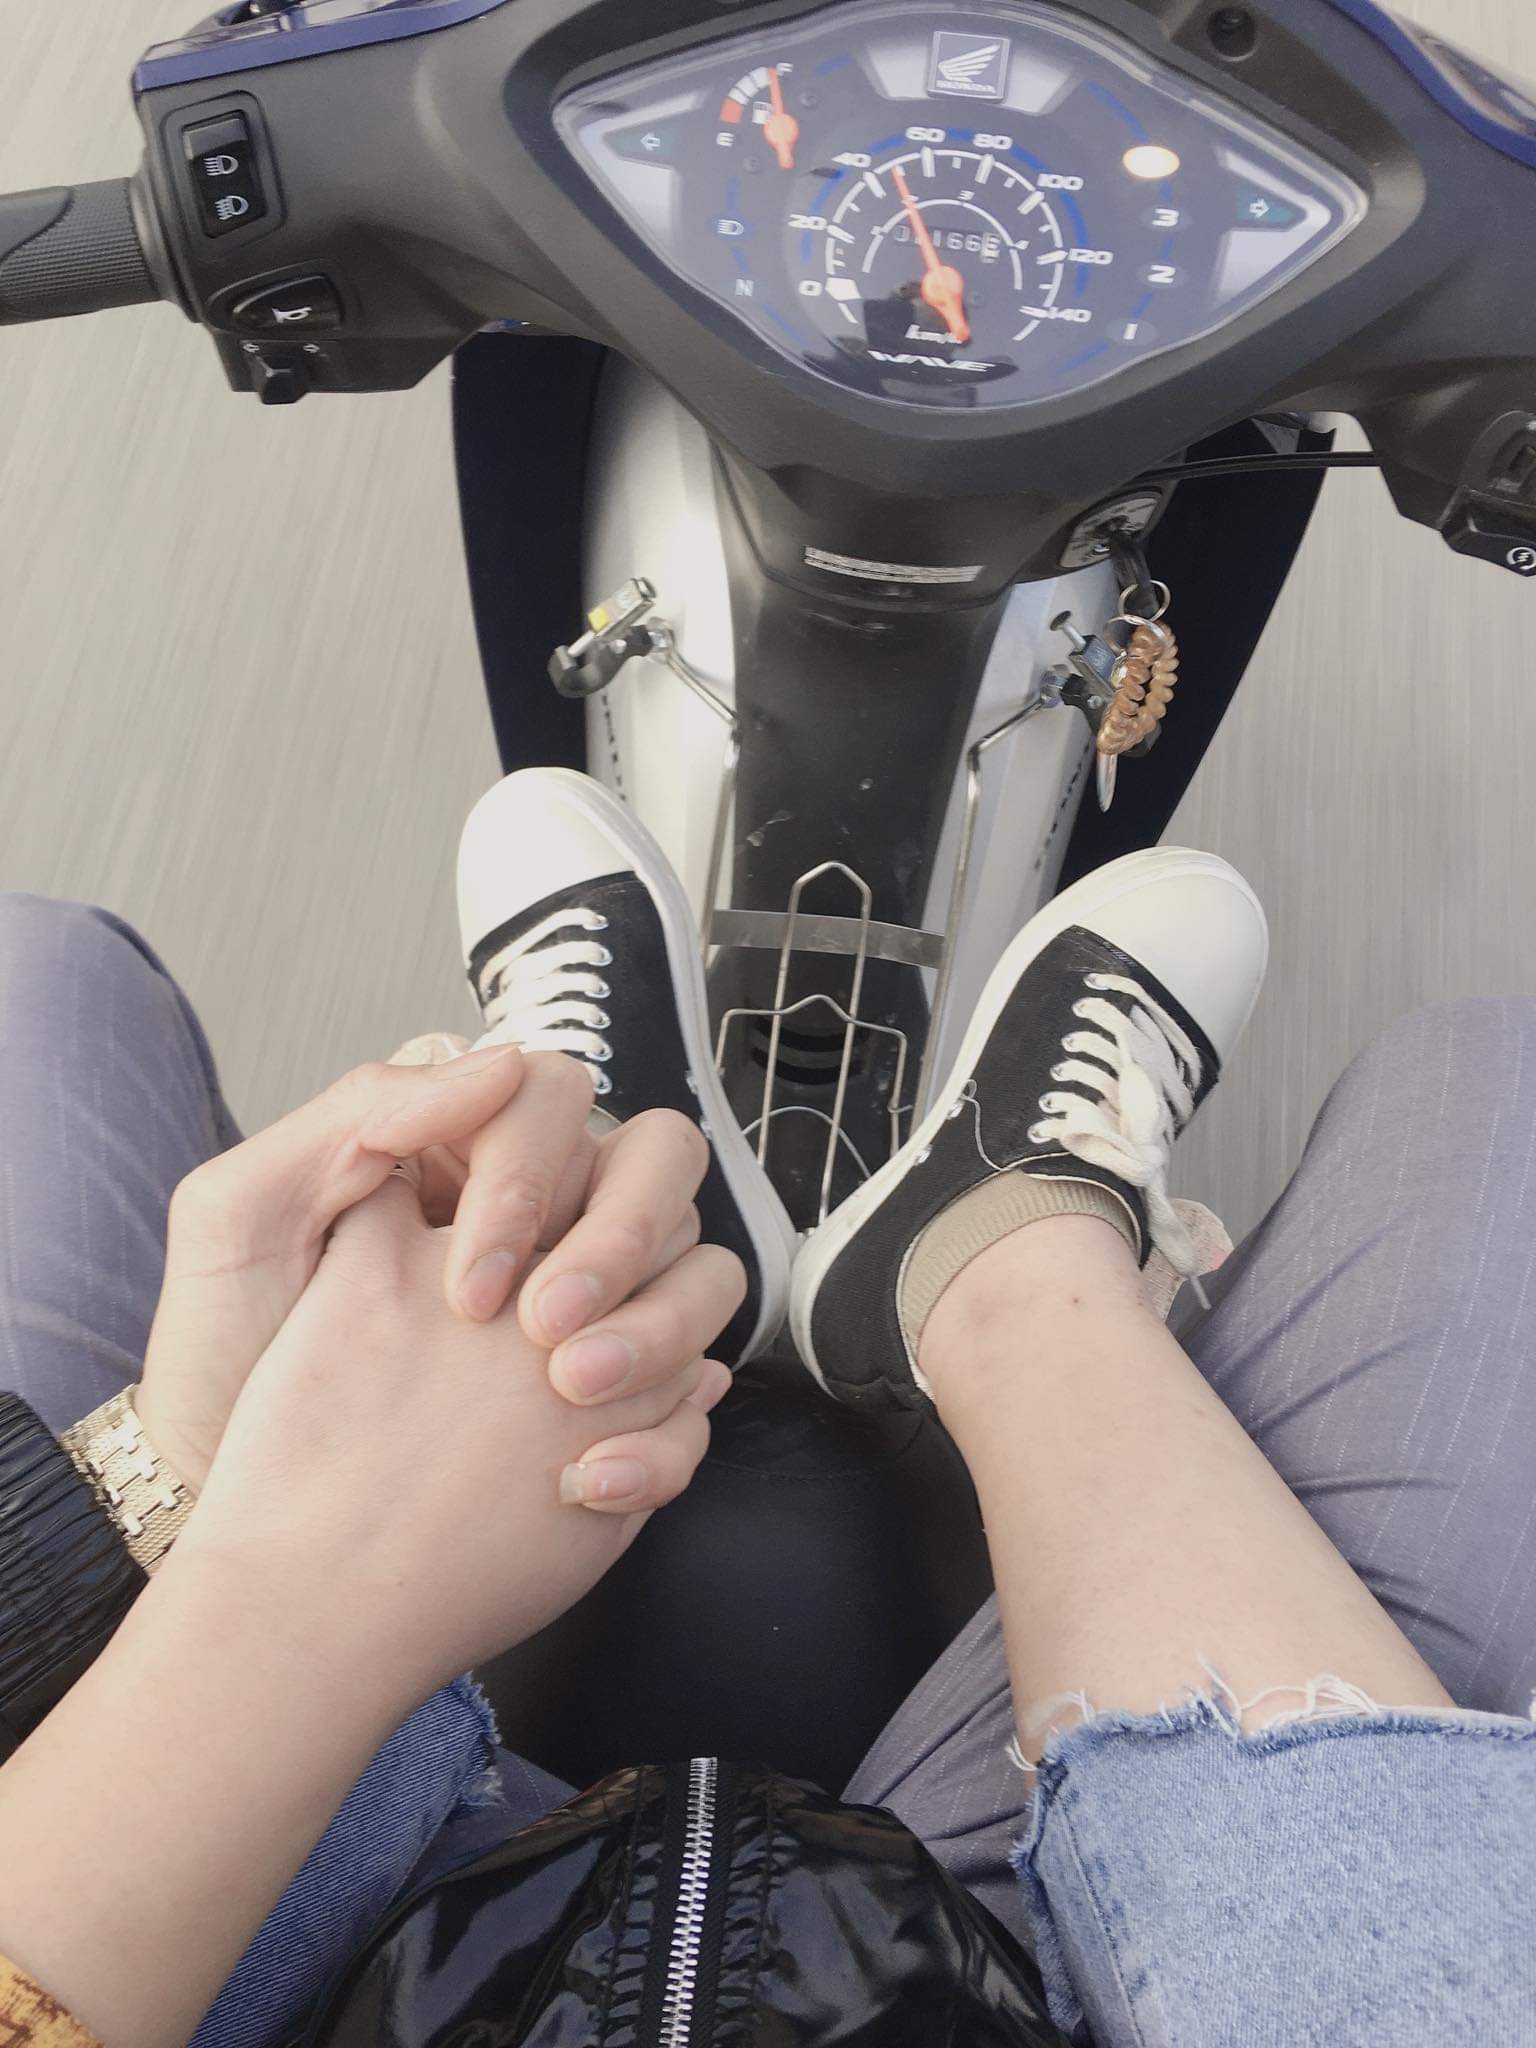 Những hình ảnh nắm tay trên xe máy đem lại cảm giác tự do và hạnh phúc trong cuộc sống. Nó cũng có thể là một nét đẹp trong tình yêu, một dấu hiệu thể hiện tình cảm chân thành giữa hai người.